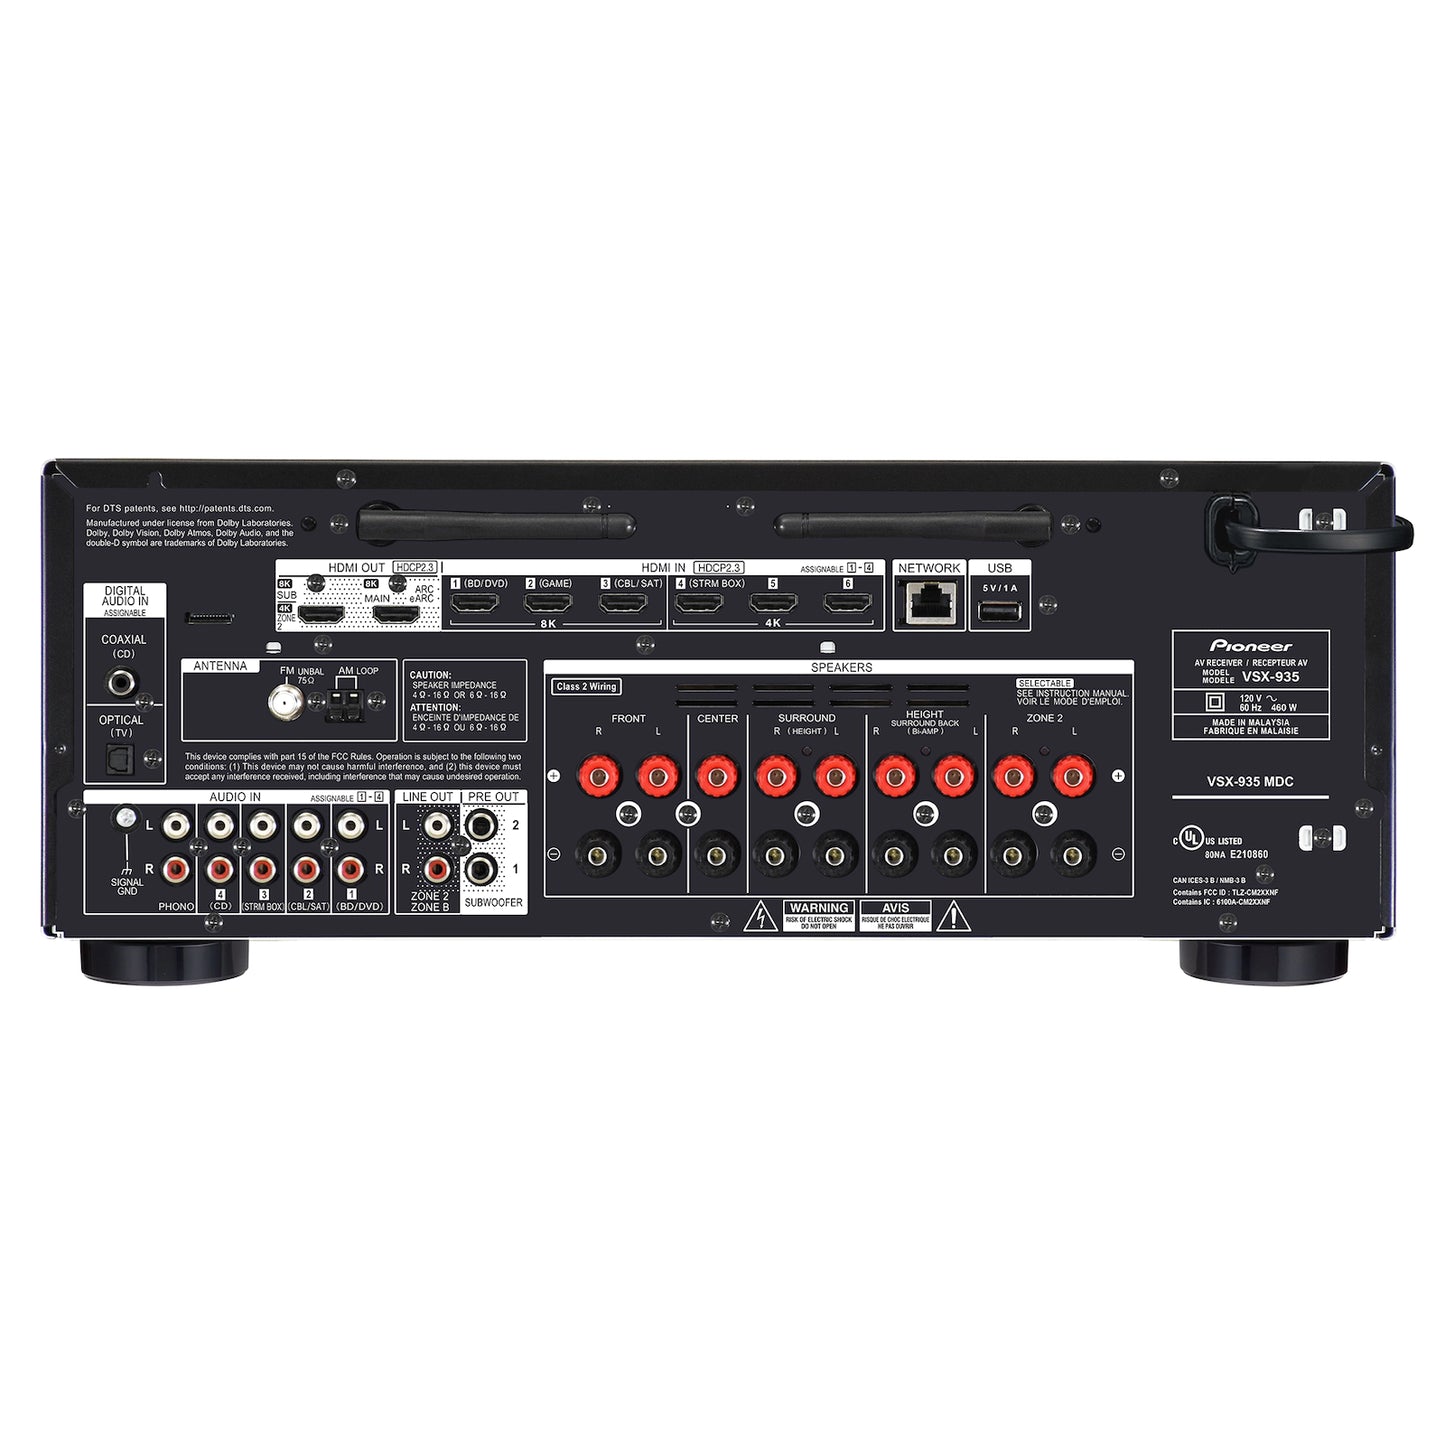 Pioneer VSX-935 7.2-Channel Network AV Receiver - Black